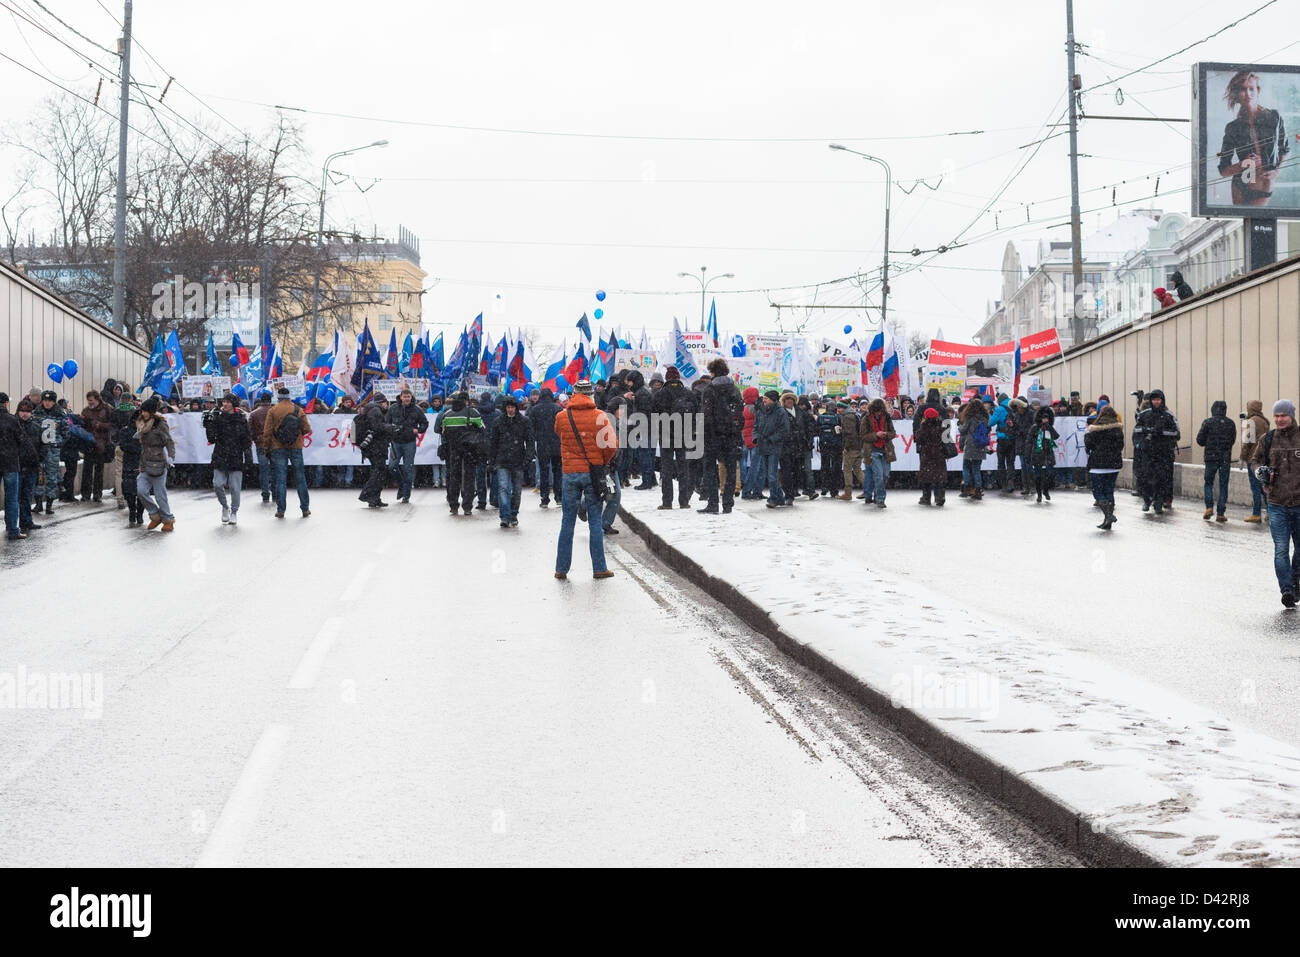 Federación de manifestantes manifestación en apoyo de los EE.UU. aprobación de la prohibición. Moscú, 2 de marzo de 2013 Foto de stock